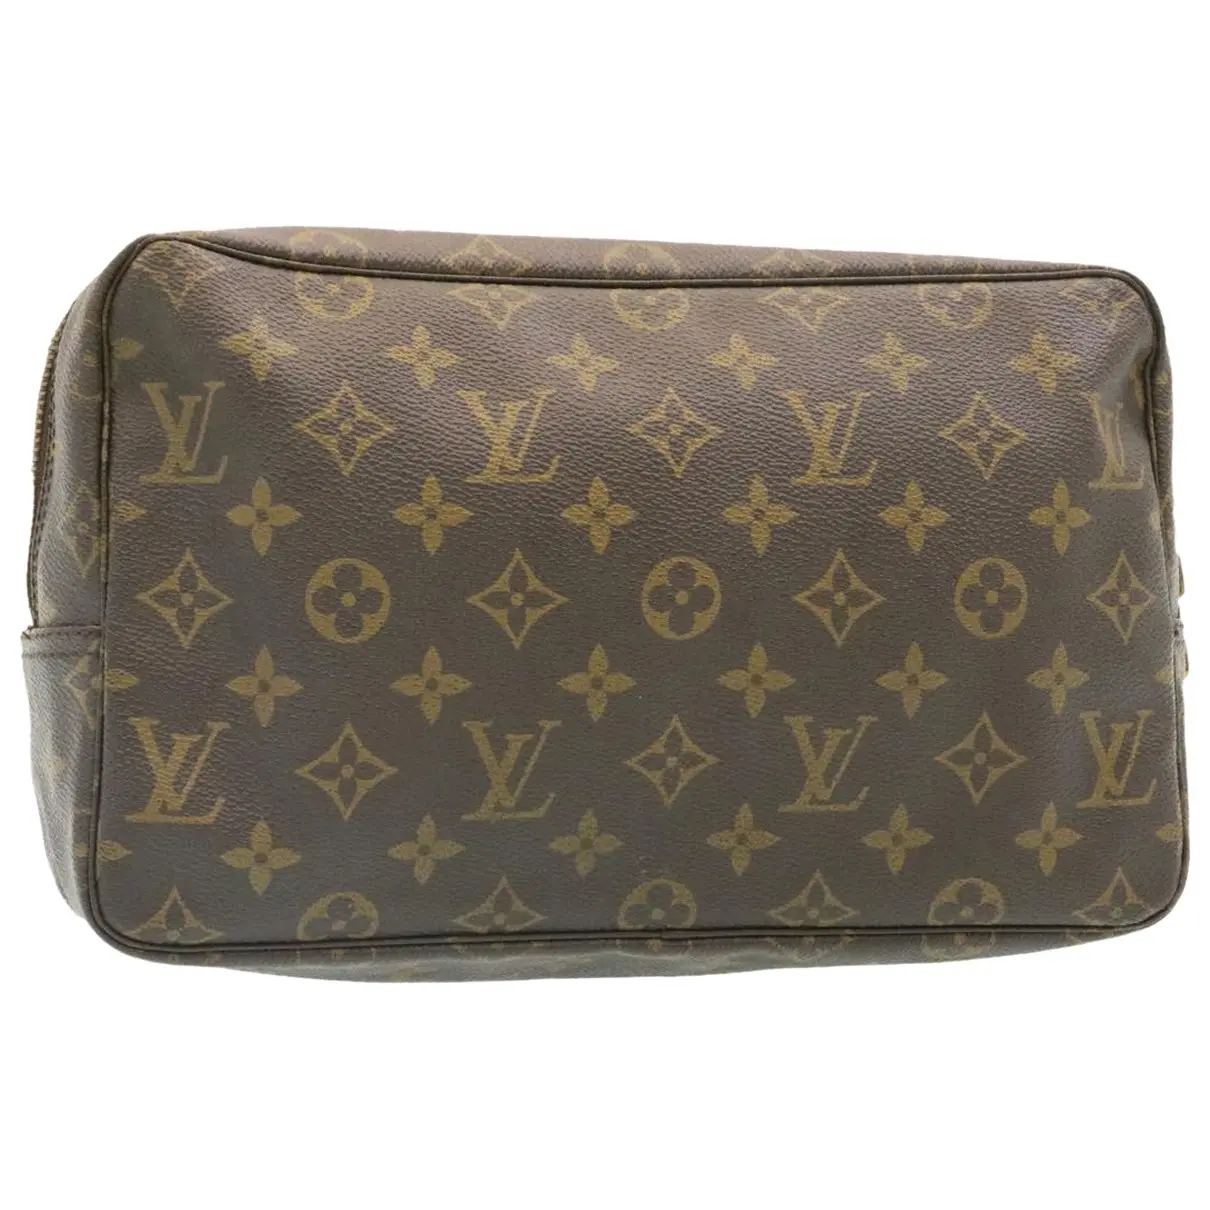 Trousse de Toilette cloth travel bag Louis Vuitton